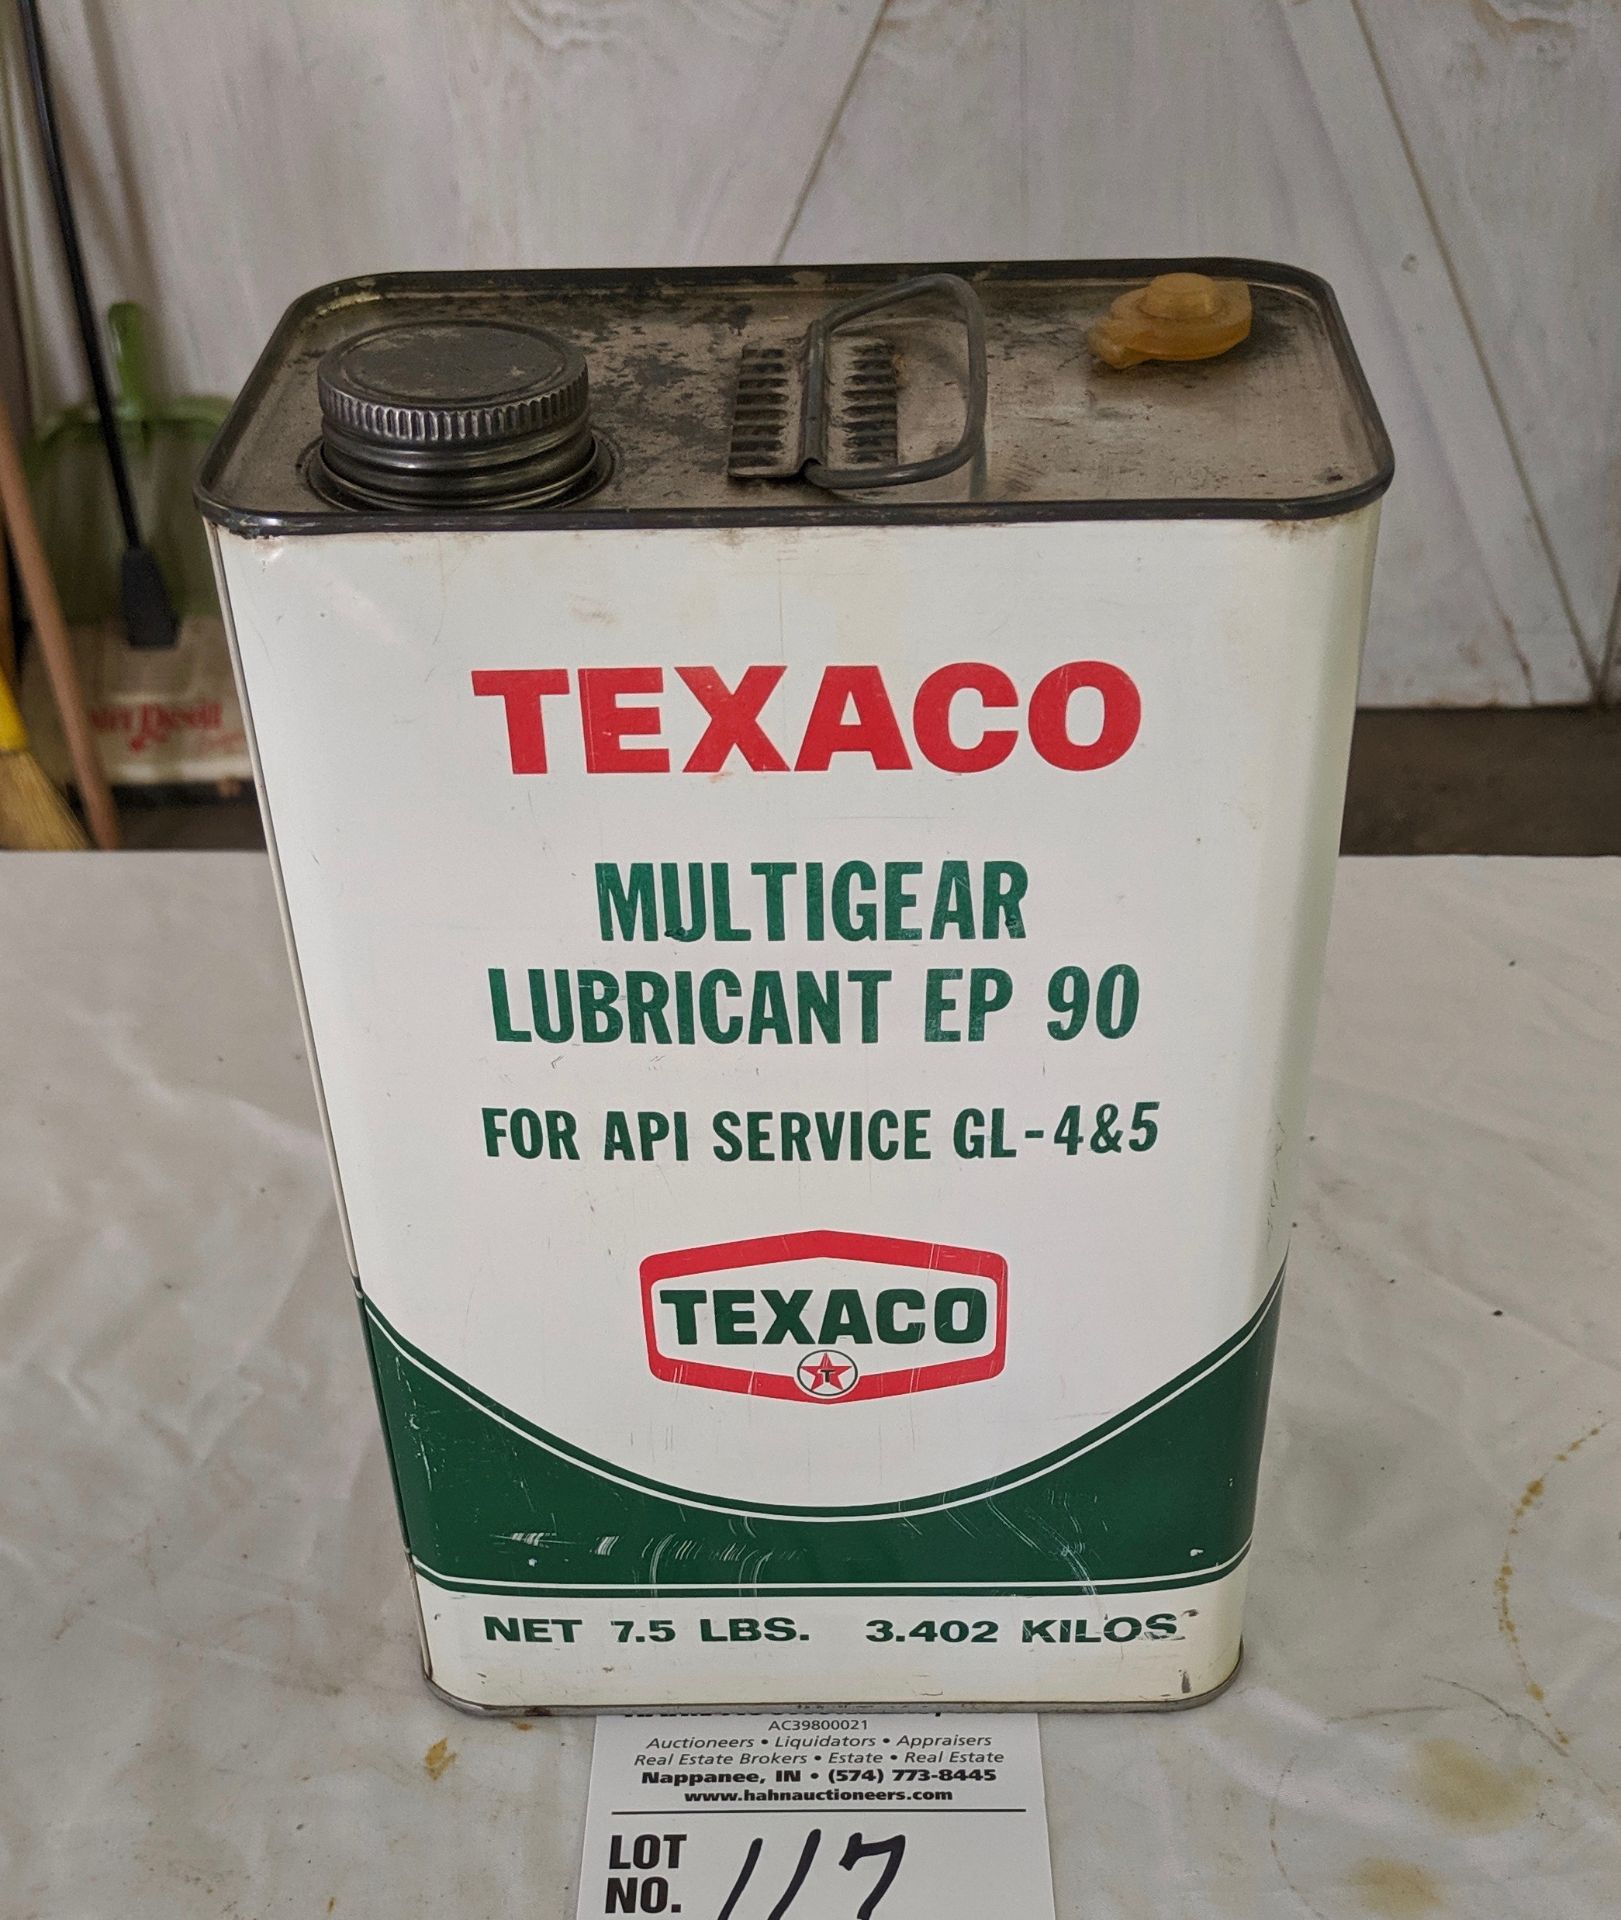 One gallon Texaco multigear lubricant can - full